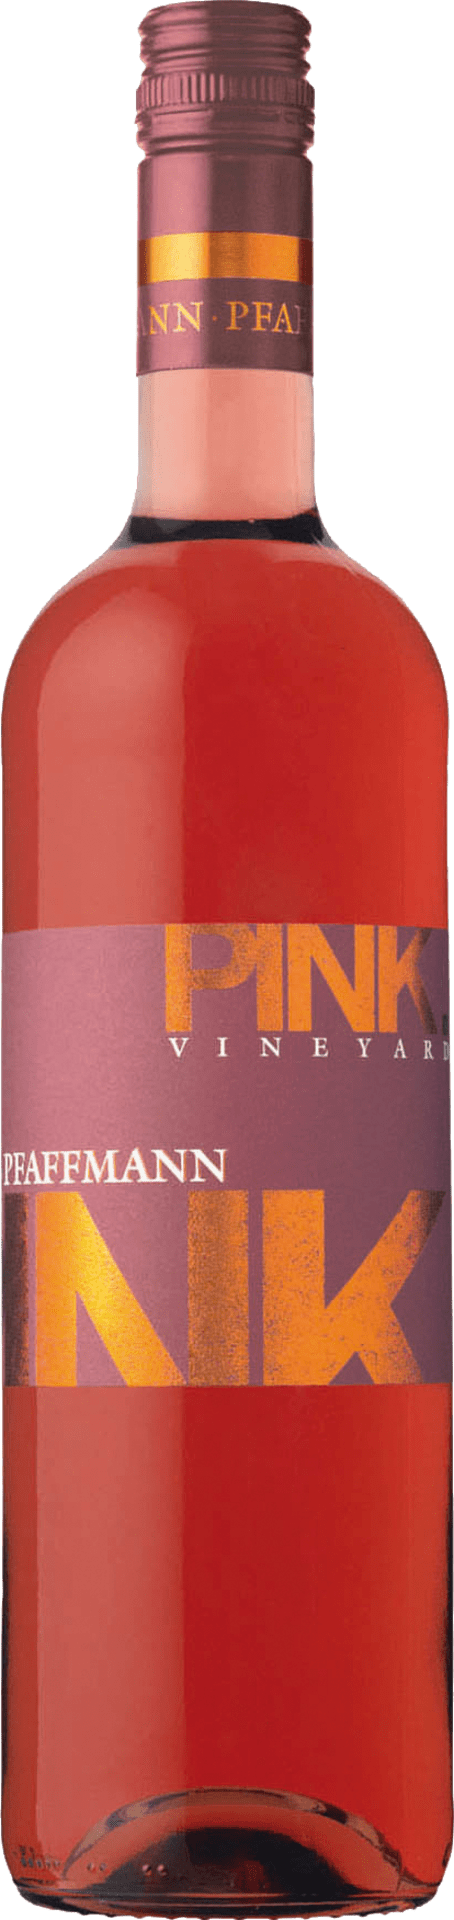 Pink Vineyard 